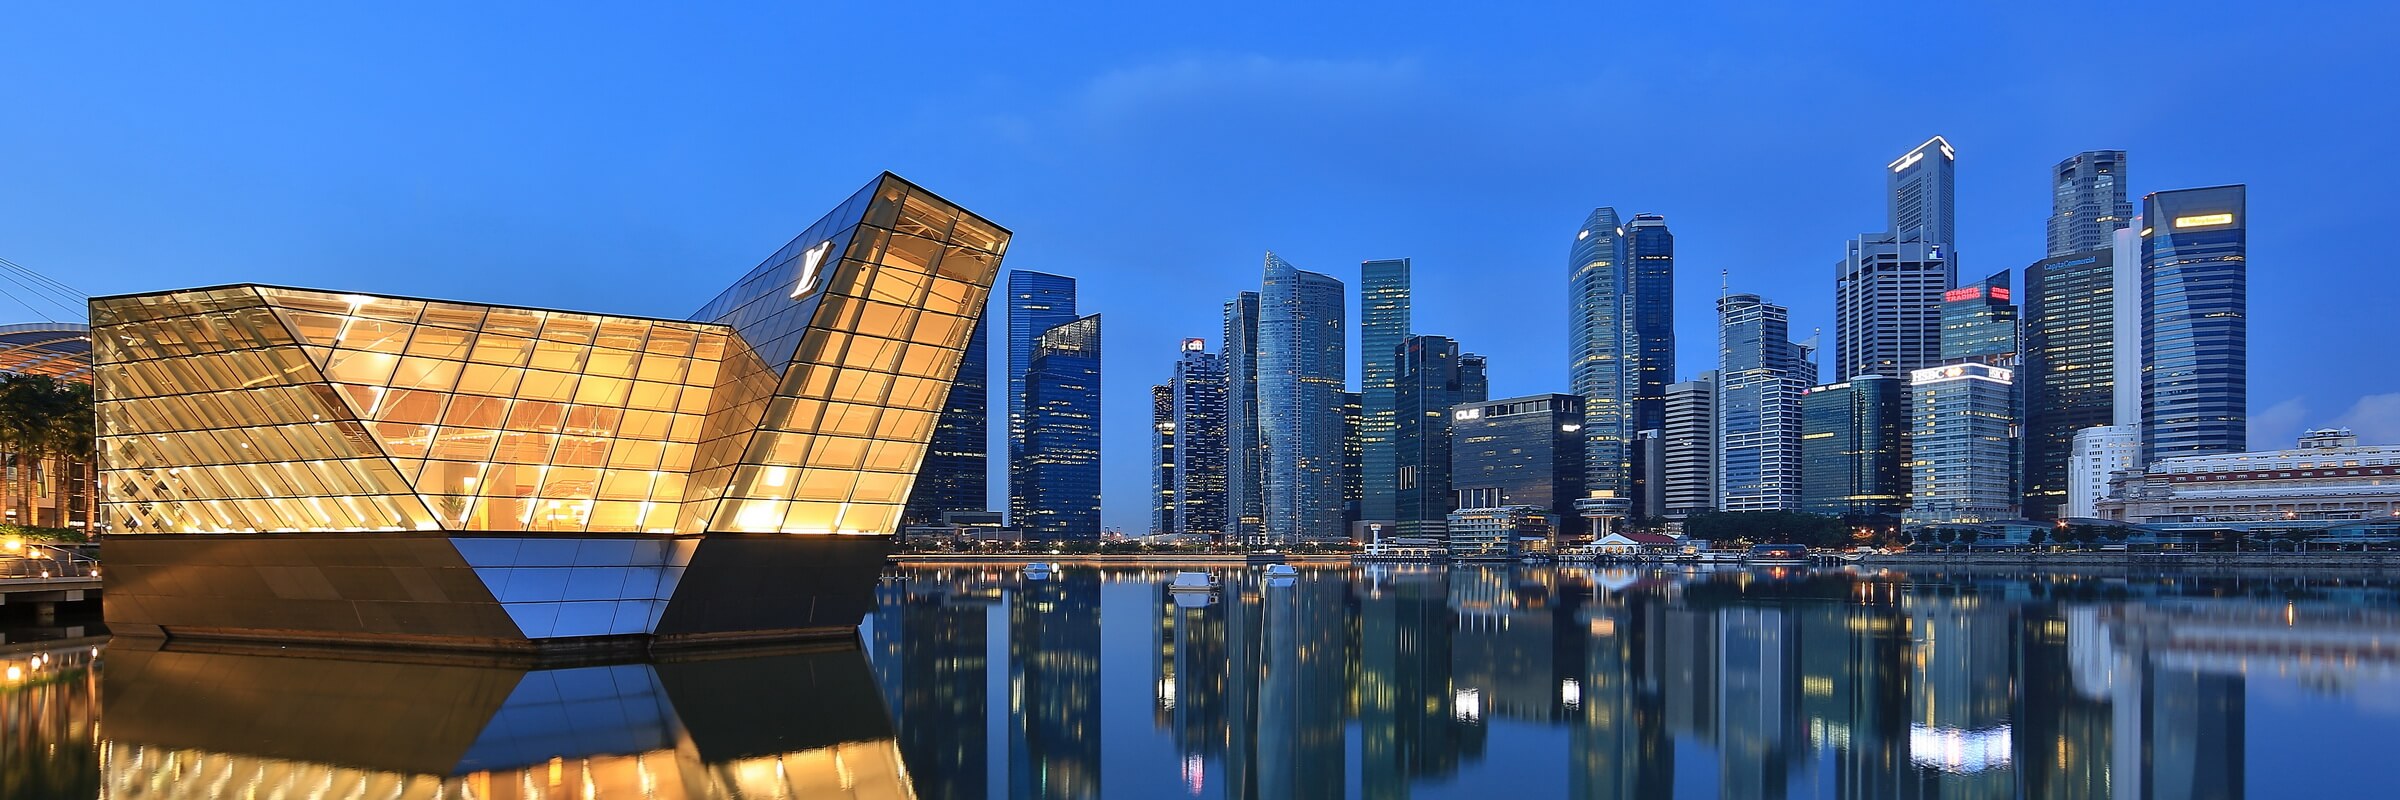 Marina Bay ist der jüngste Stadtteil von Singapur und wurde auf künstlichen Landaufschüttungen gebaut.